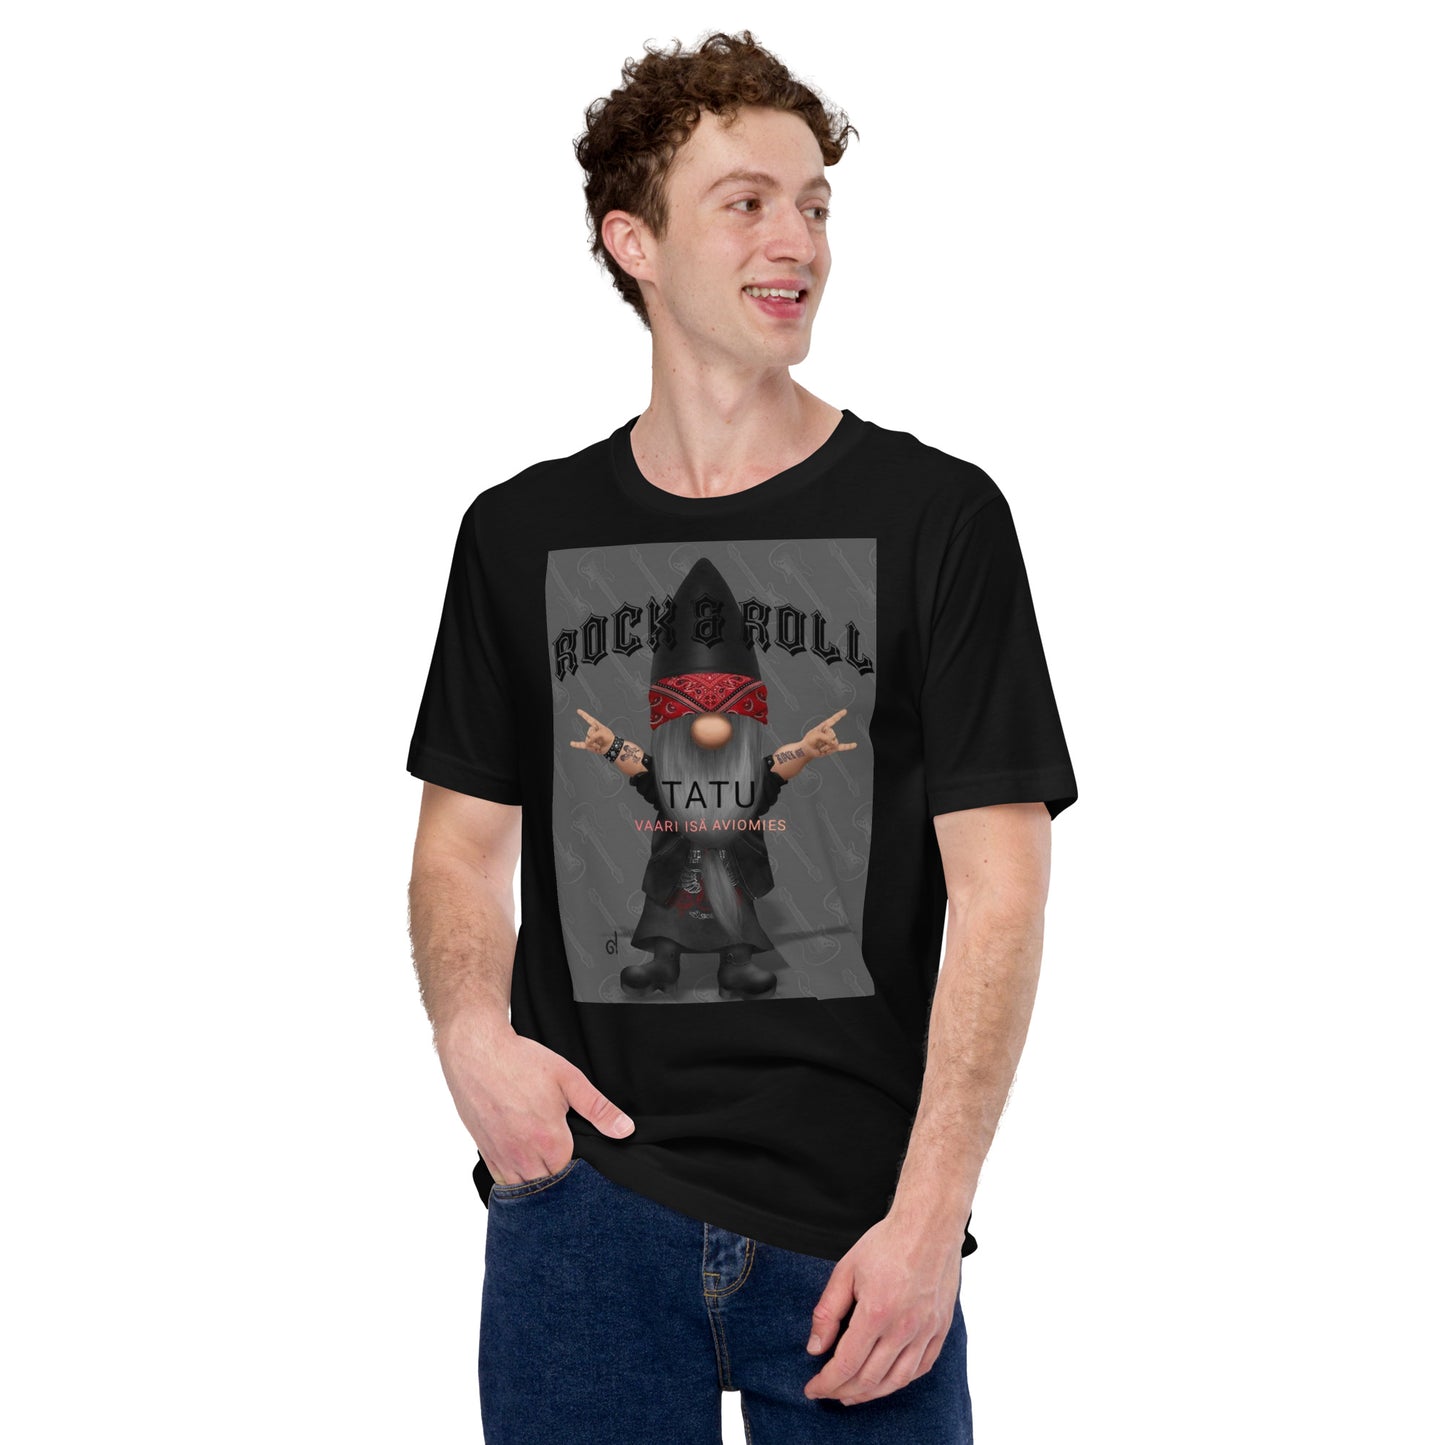 "Tatu" men's t-shirt (customer's request)